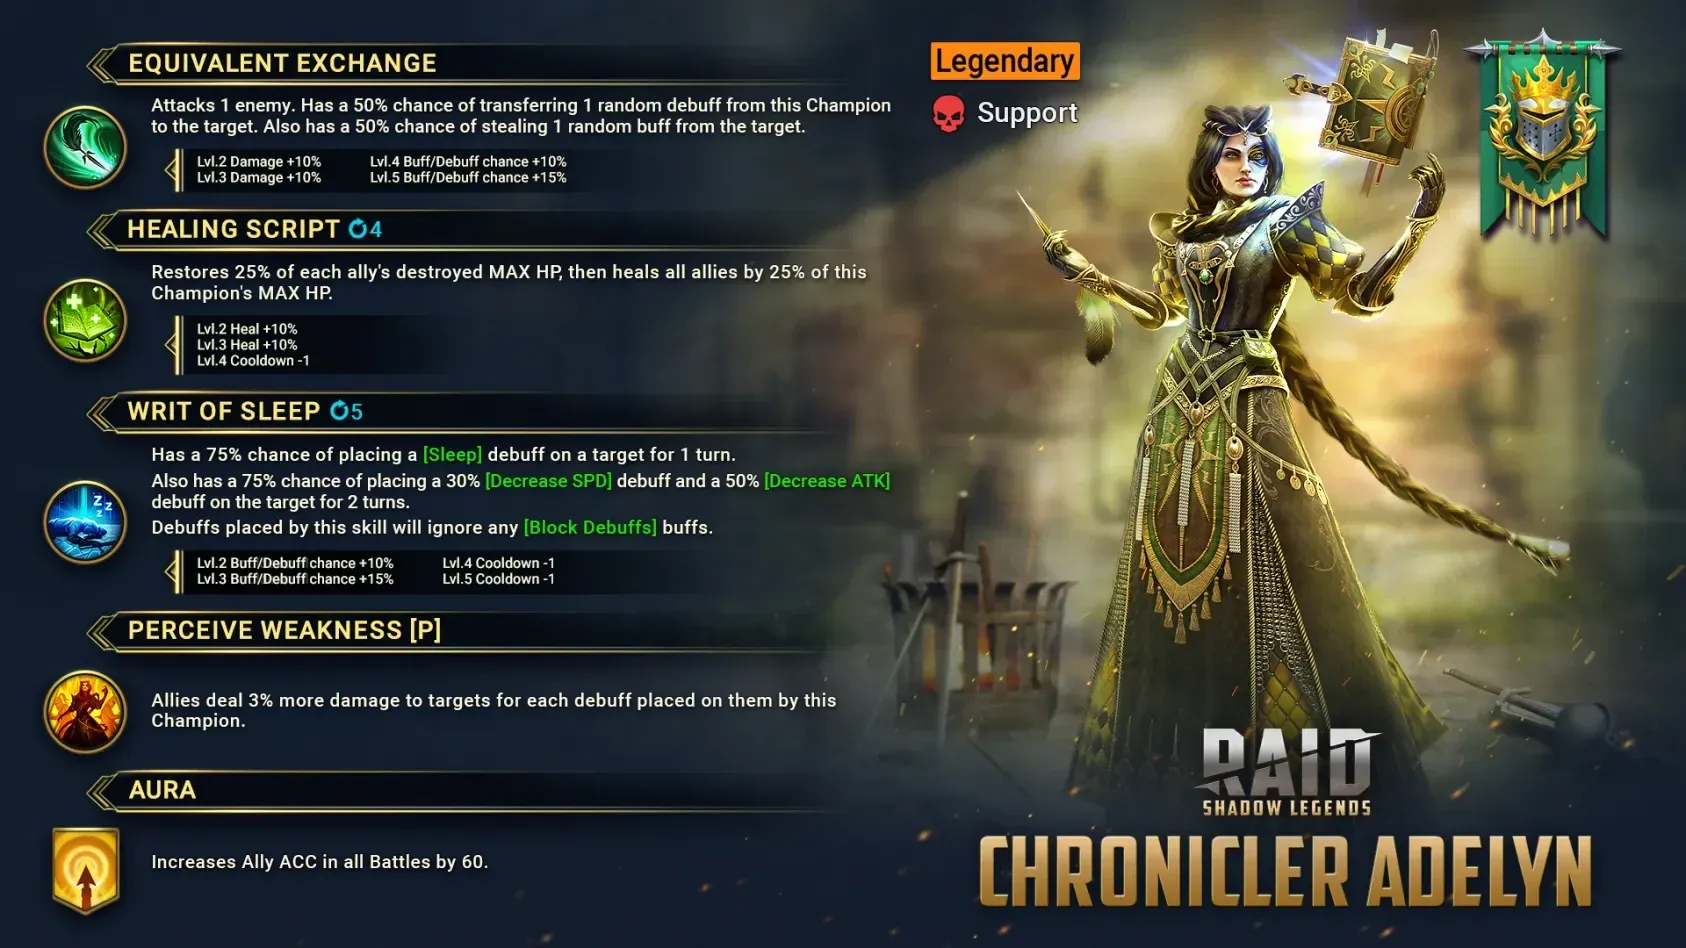 RAID Shadow Legends Chronicler Adelyn Введение – Как получить